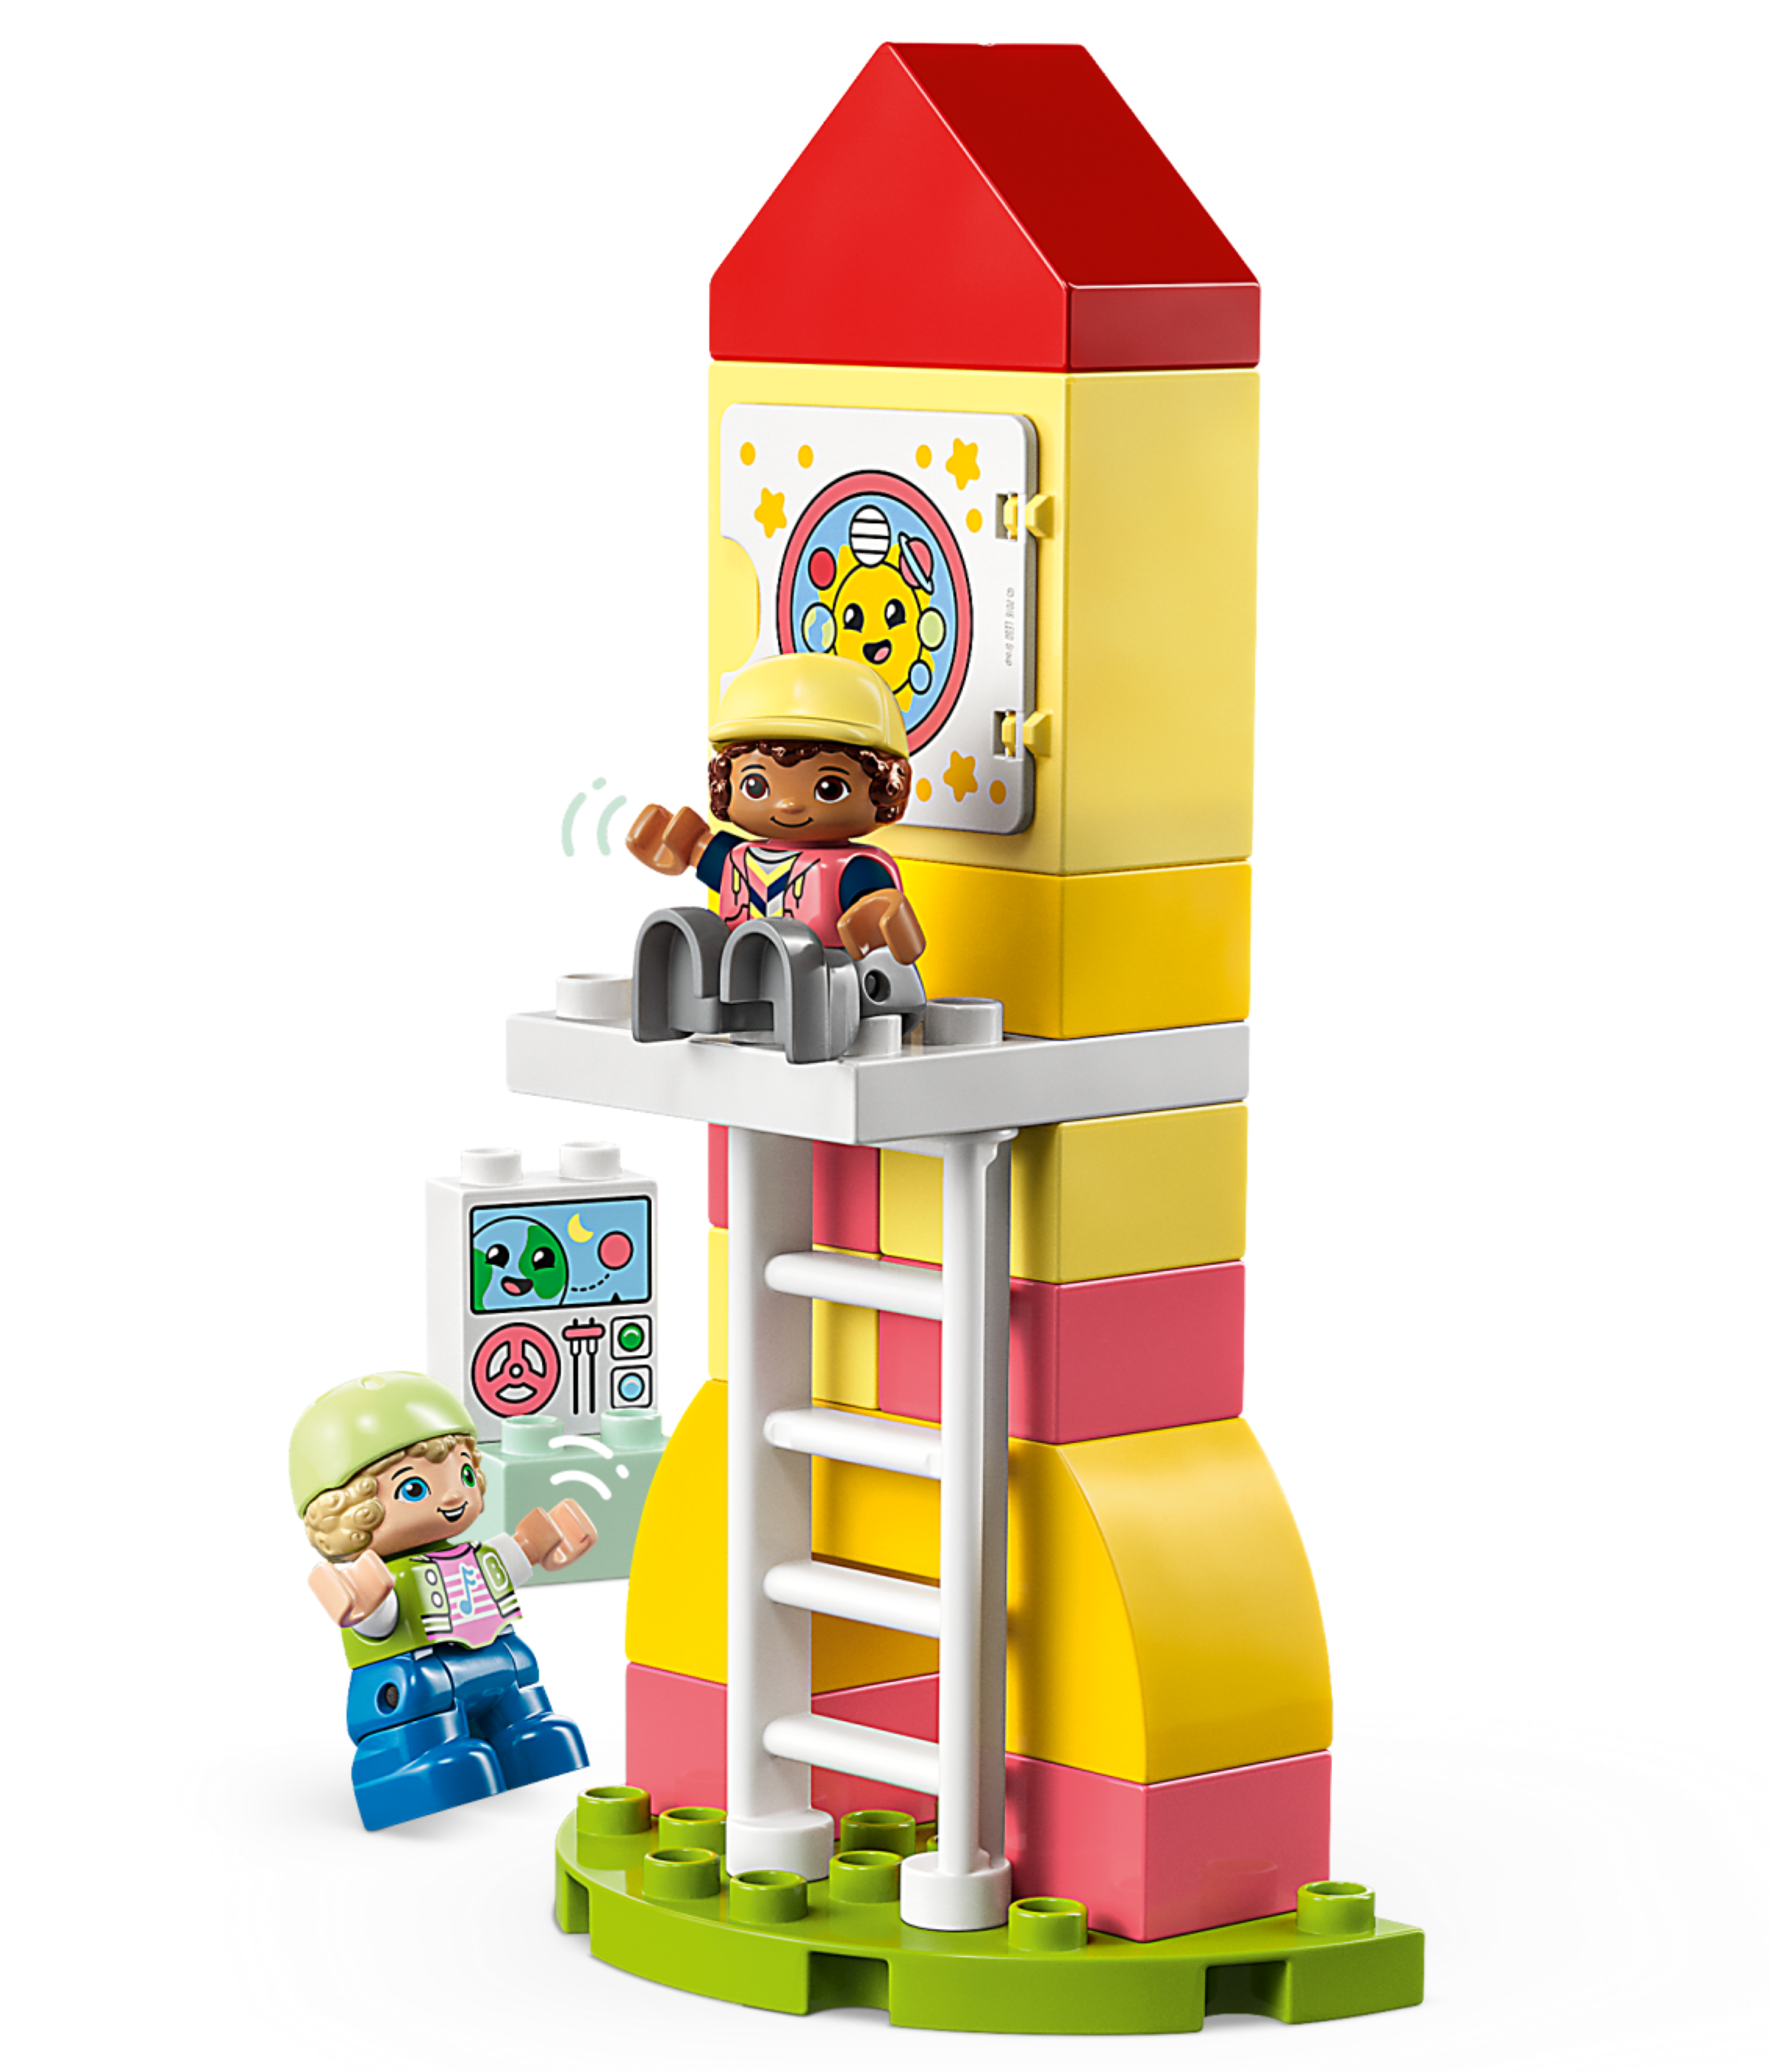 jord fejl Konkret Dream Playground 10991 | DUPLO® | Buy online at the Official LEGO® Shop US